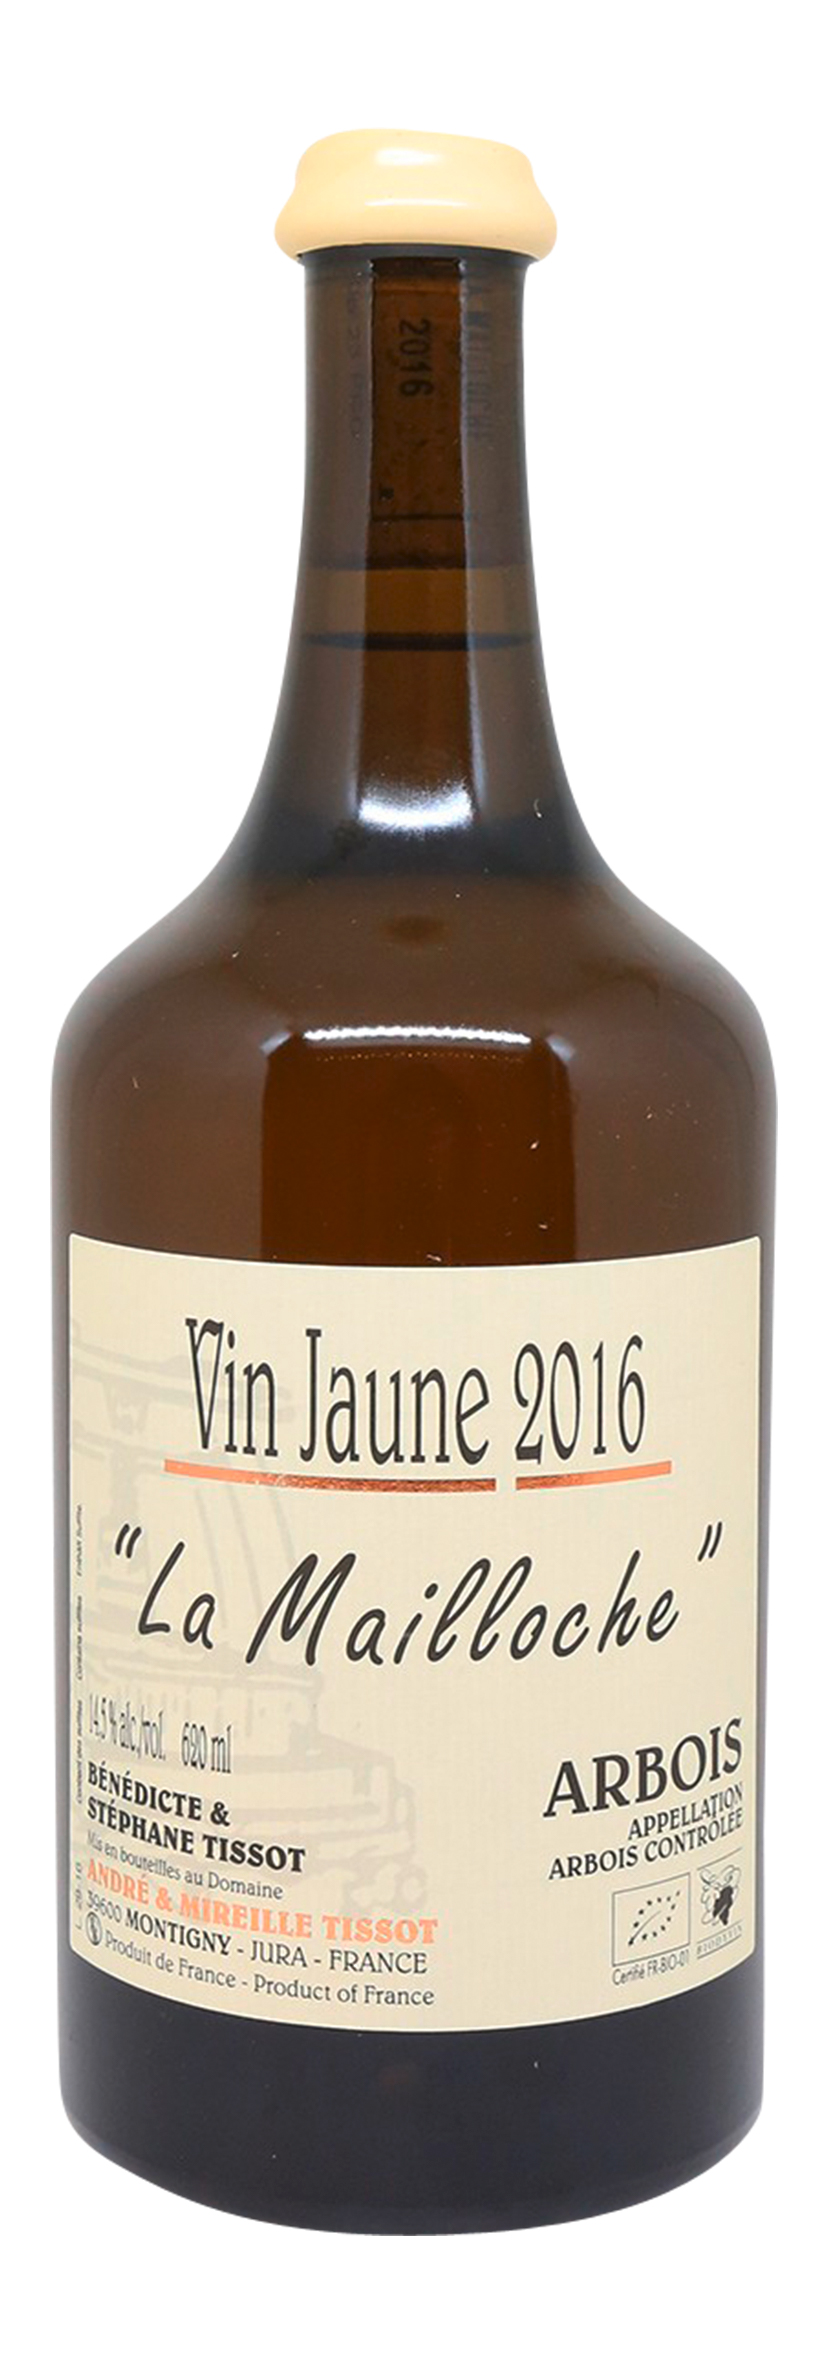 Arbois AOC Vin Jaune La Mailloche 2016